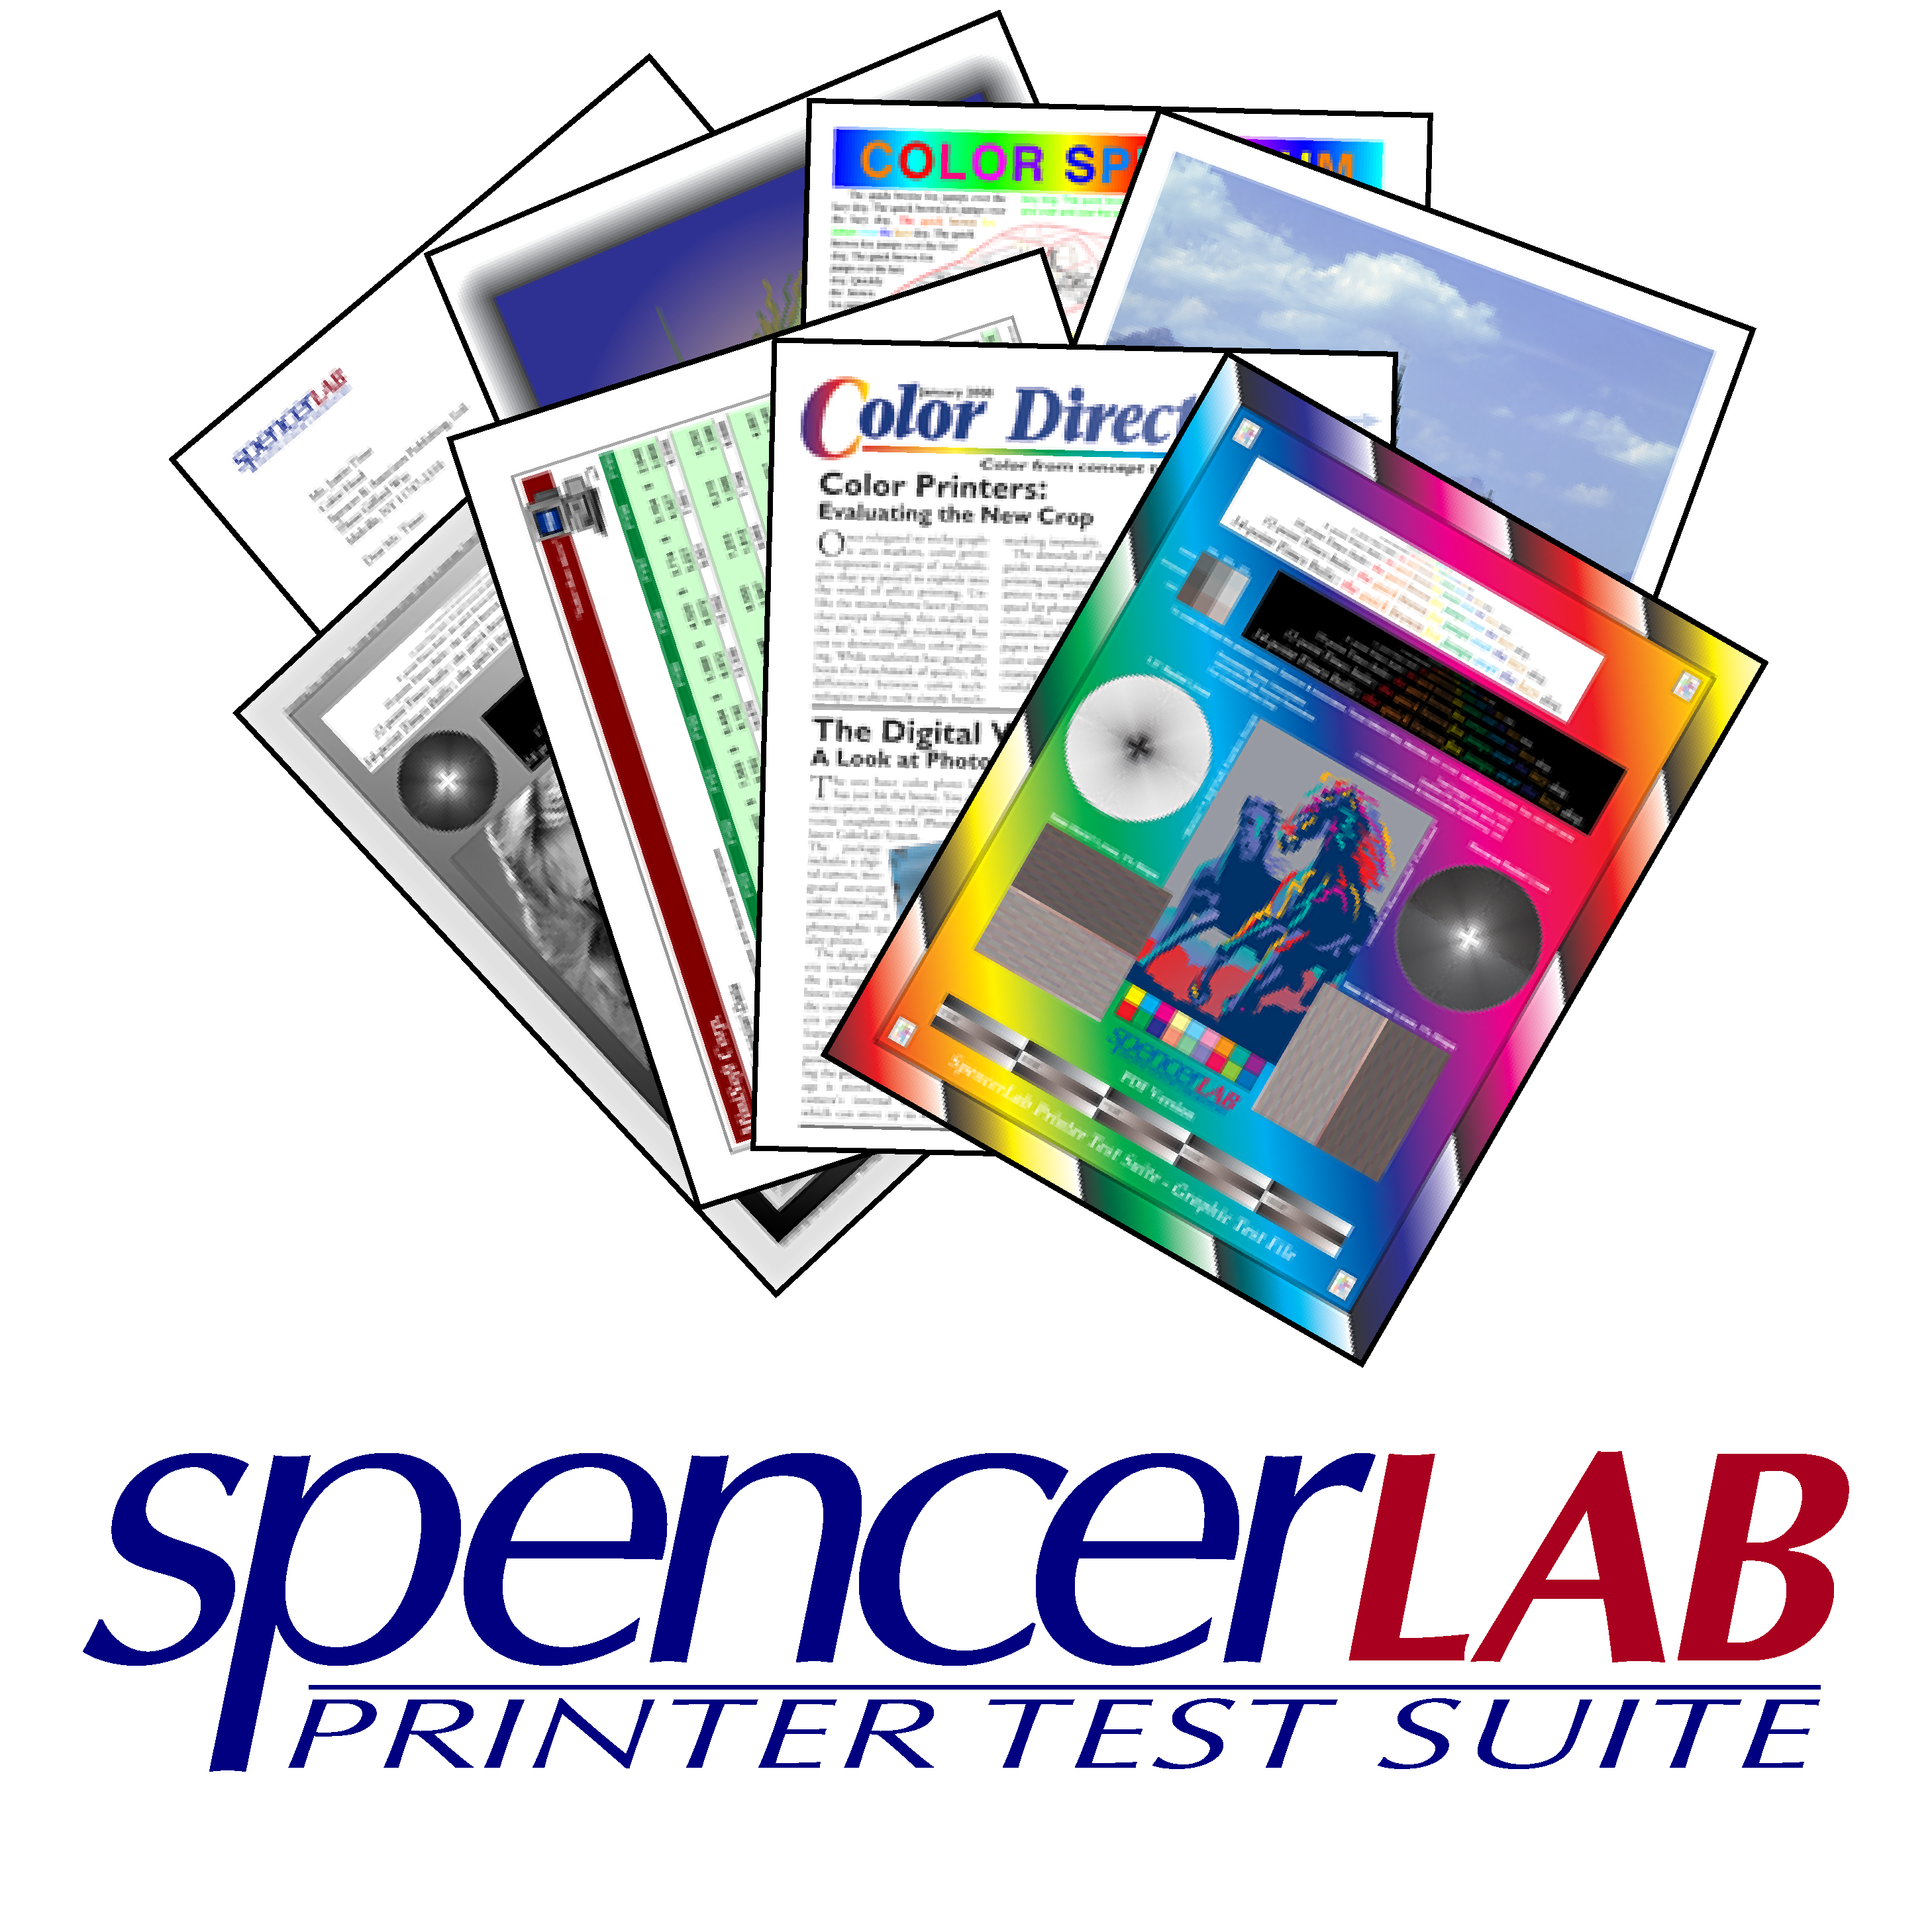 SpencerLab Printer Test Suite